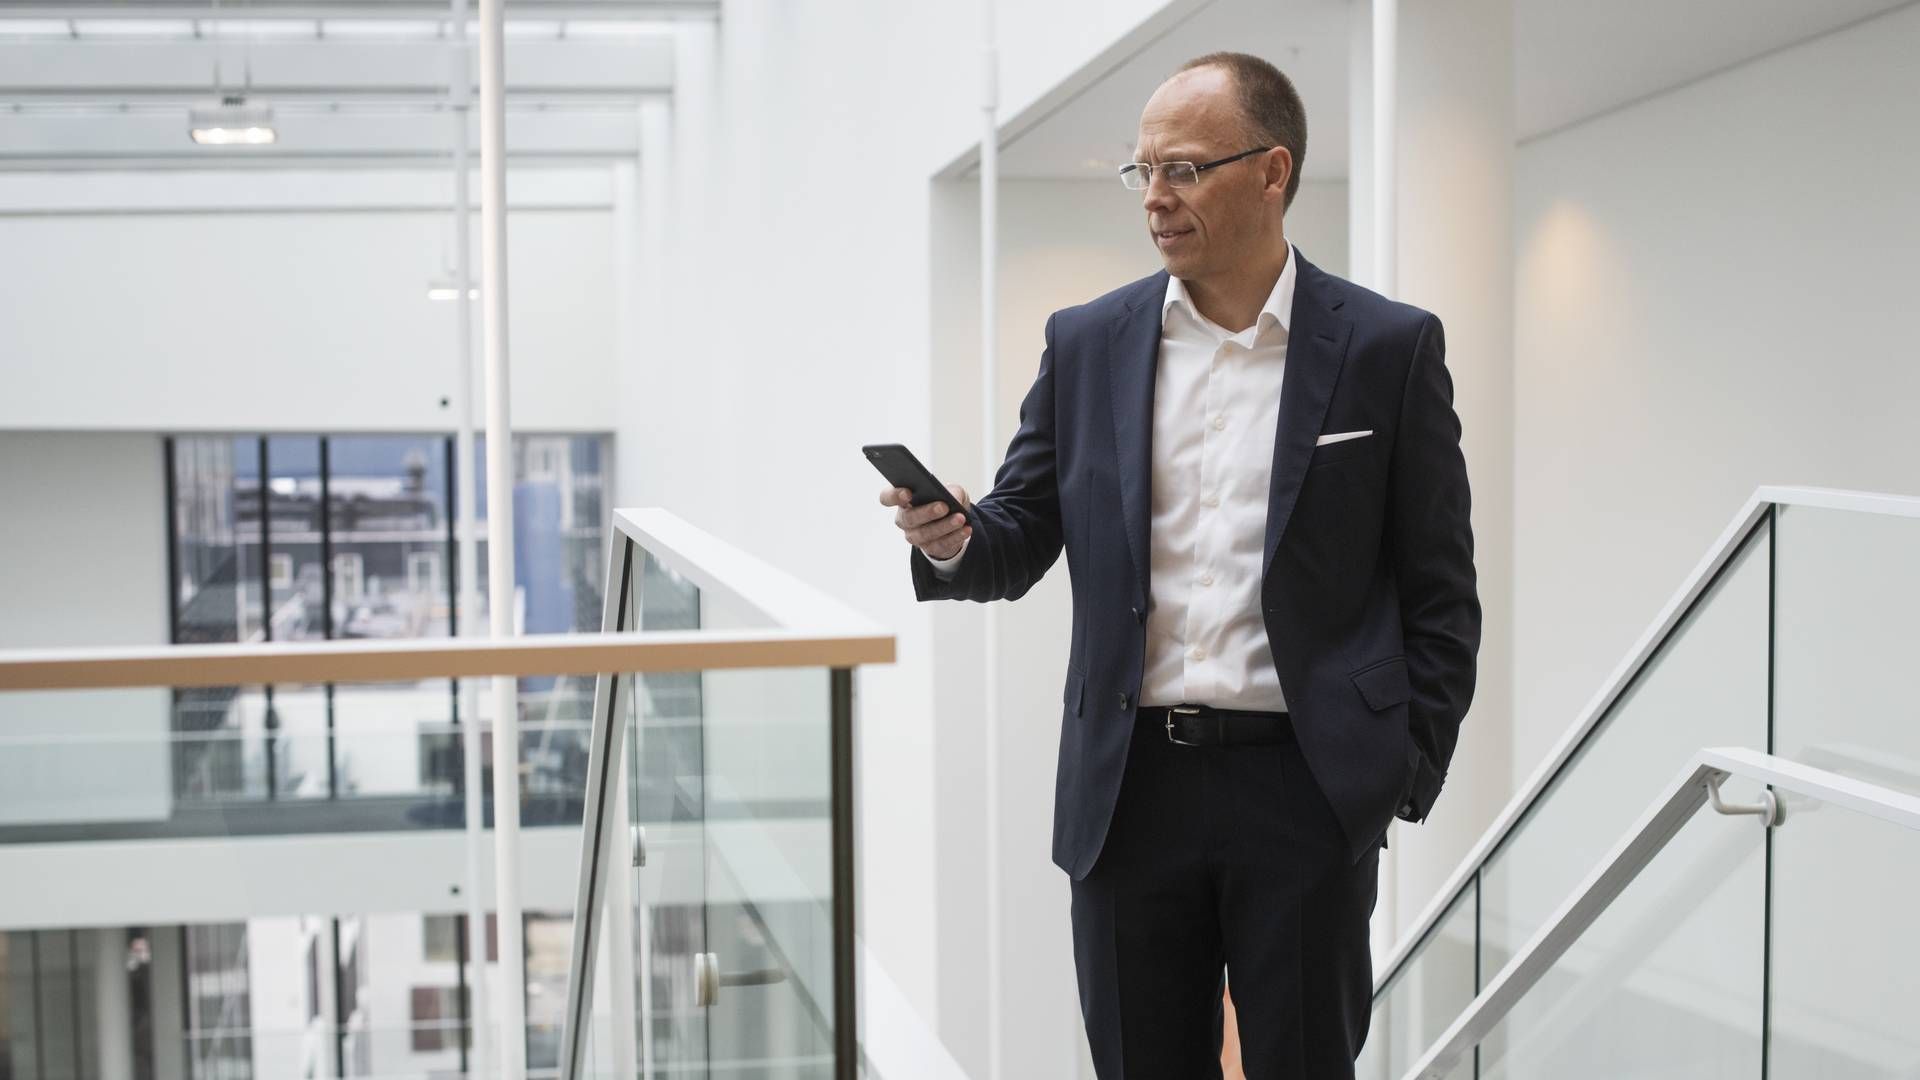 Frank Vang-Jensen, Nordea's CEO | Photo: Gregers Tycho/ERH